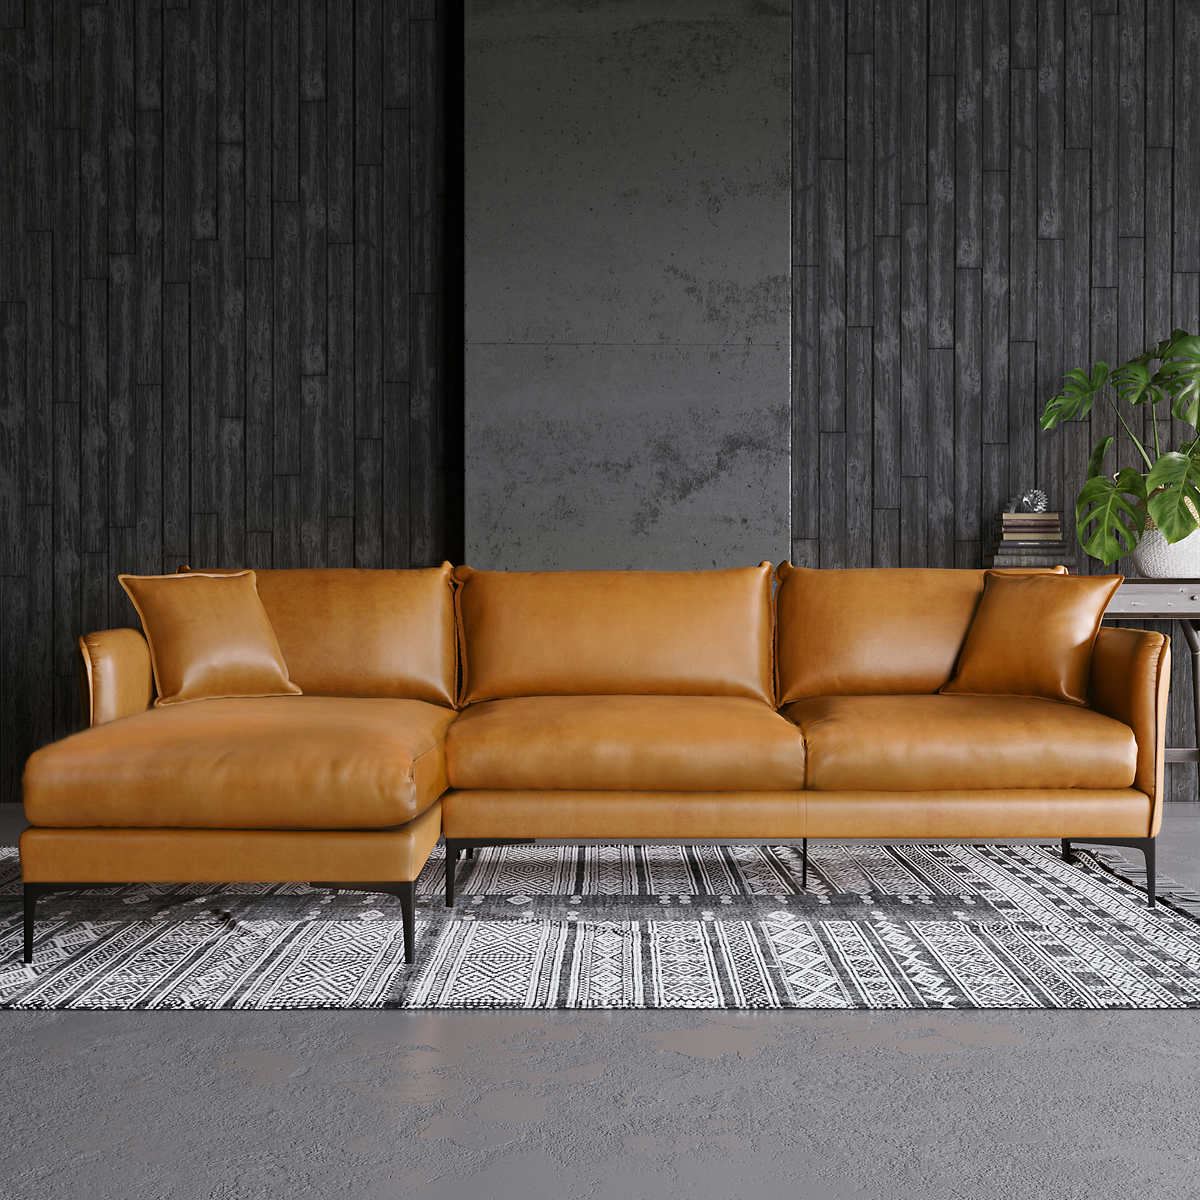 Hjelm pålidelighed Imagination Chaiselong sofa venstrevendt model Bergen - farve Como Tan Brown